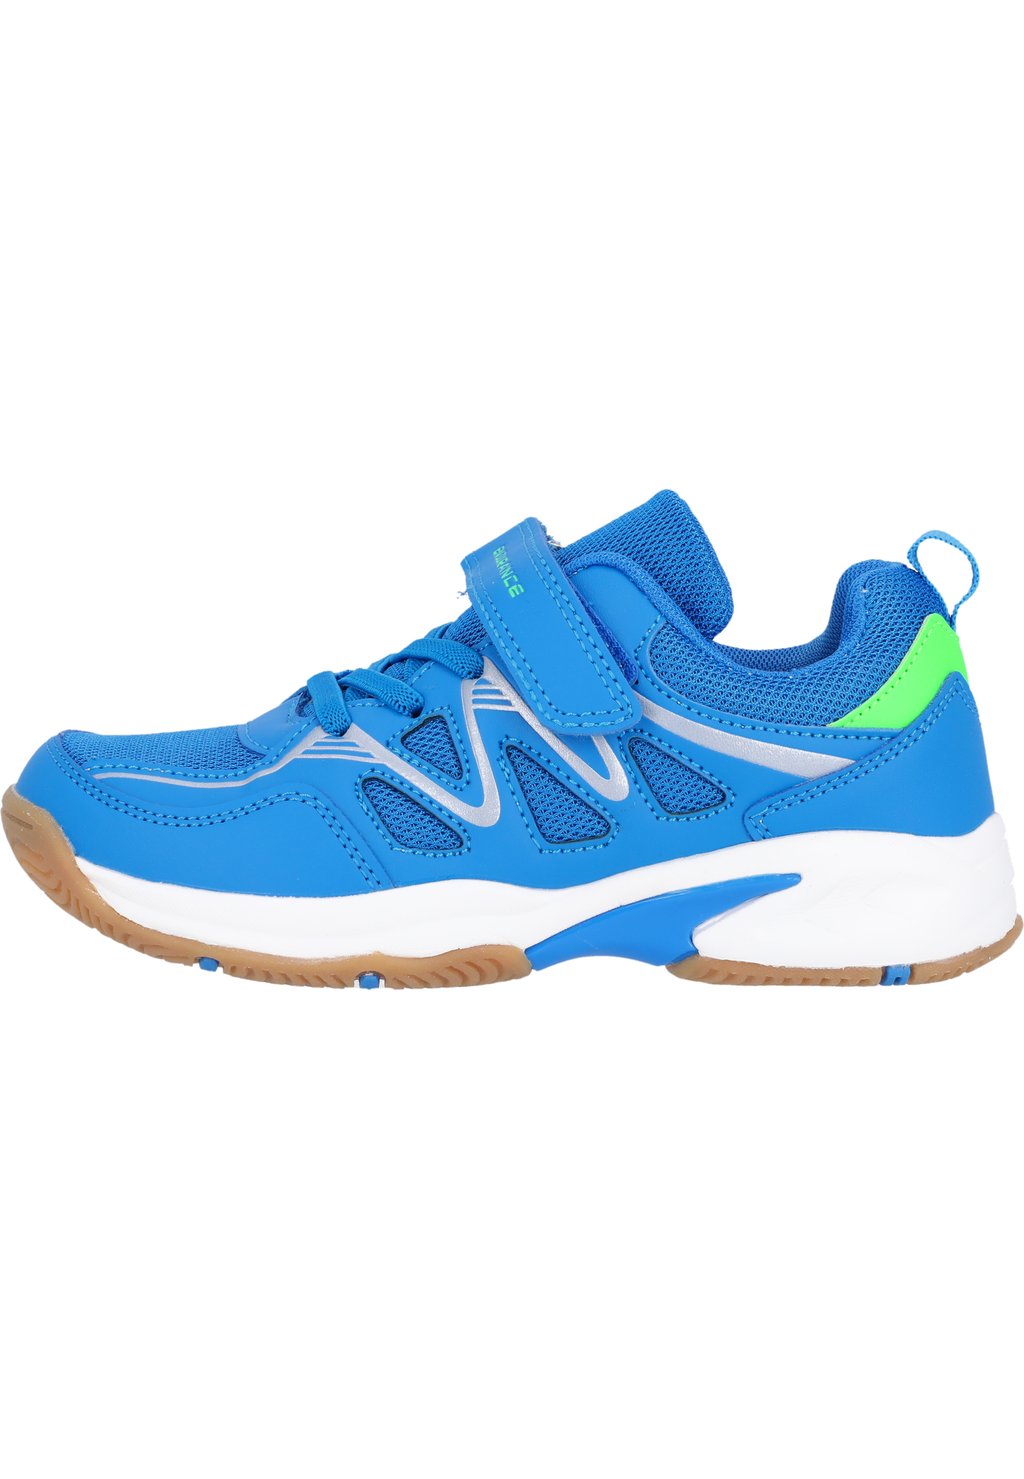 Баскетбольная обувь TASI Endurance, цвет lapis blue